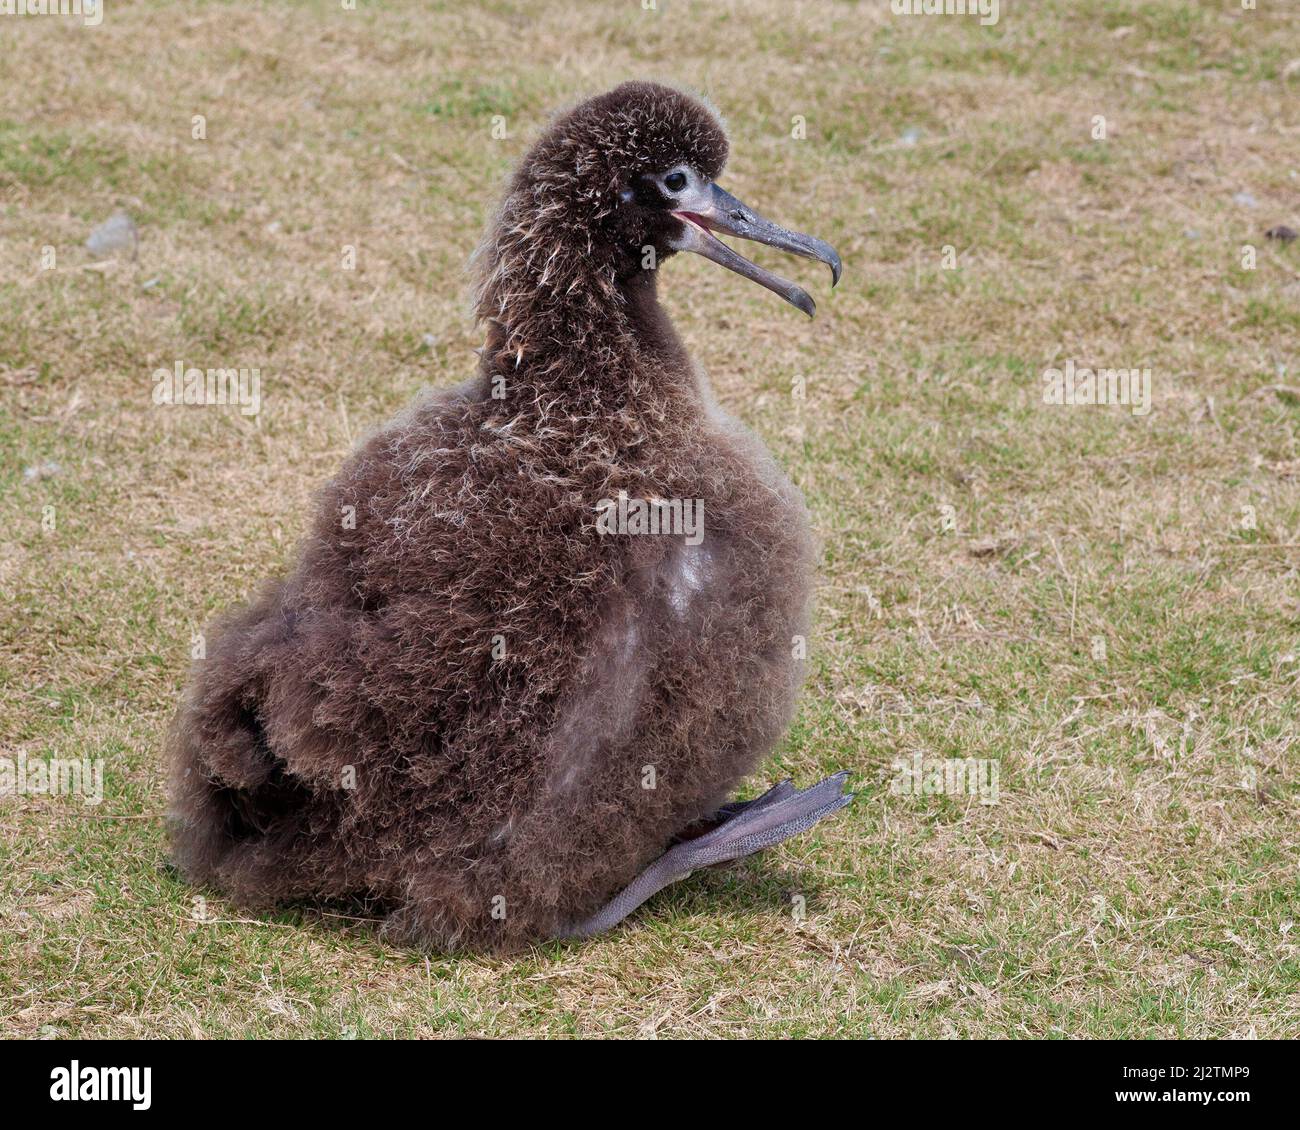 Laysan Albatross se refresca por sí mismo en el clima de la primavera caliente disipando el calor: Panting y levantando los pies del lecho del suelo para el flujo de aire. Foto de stock